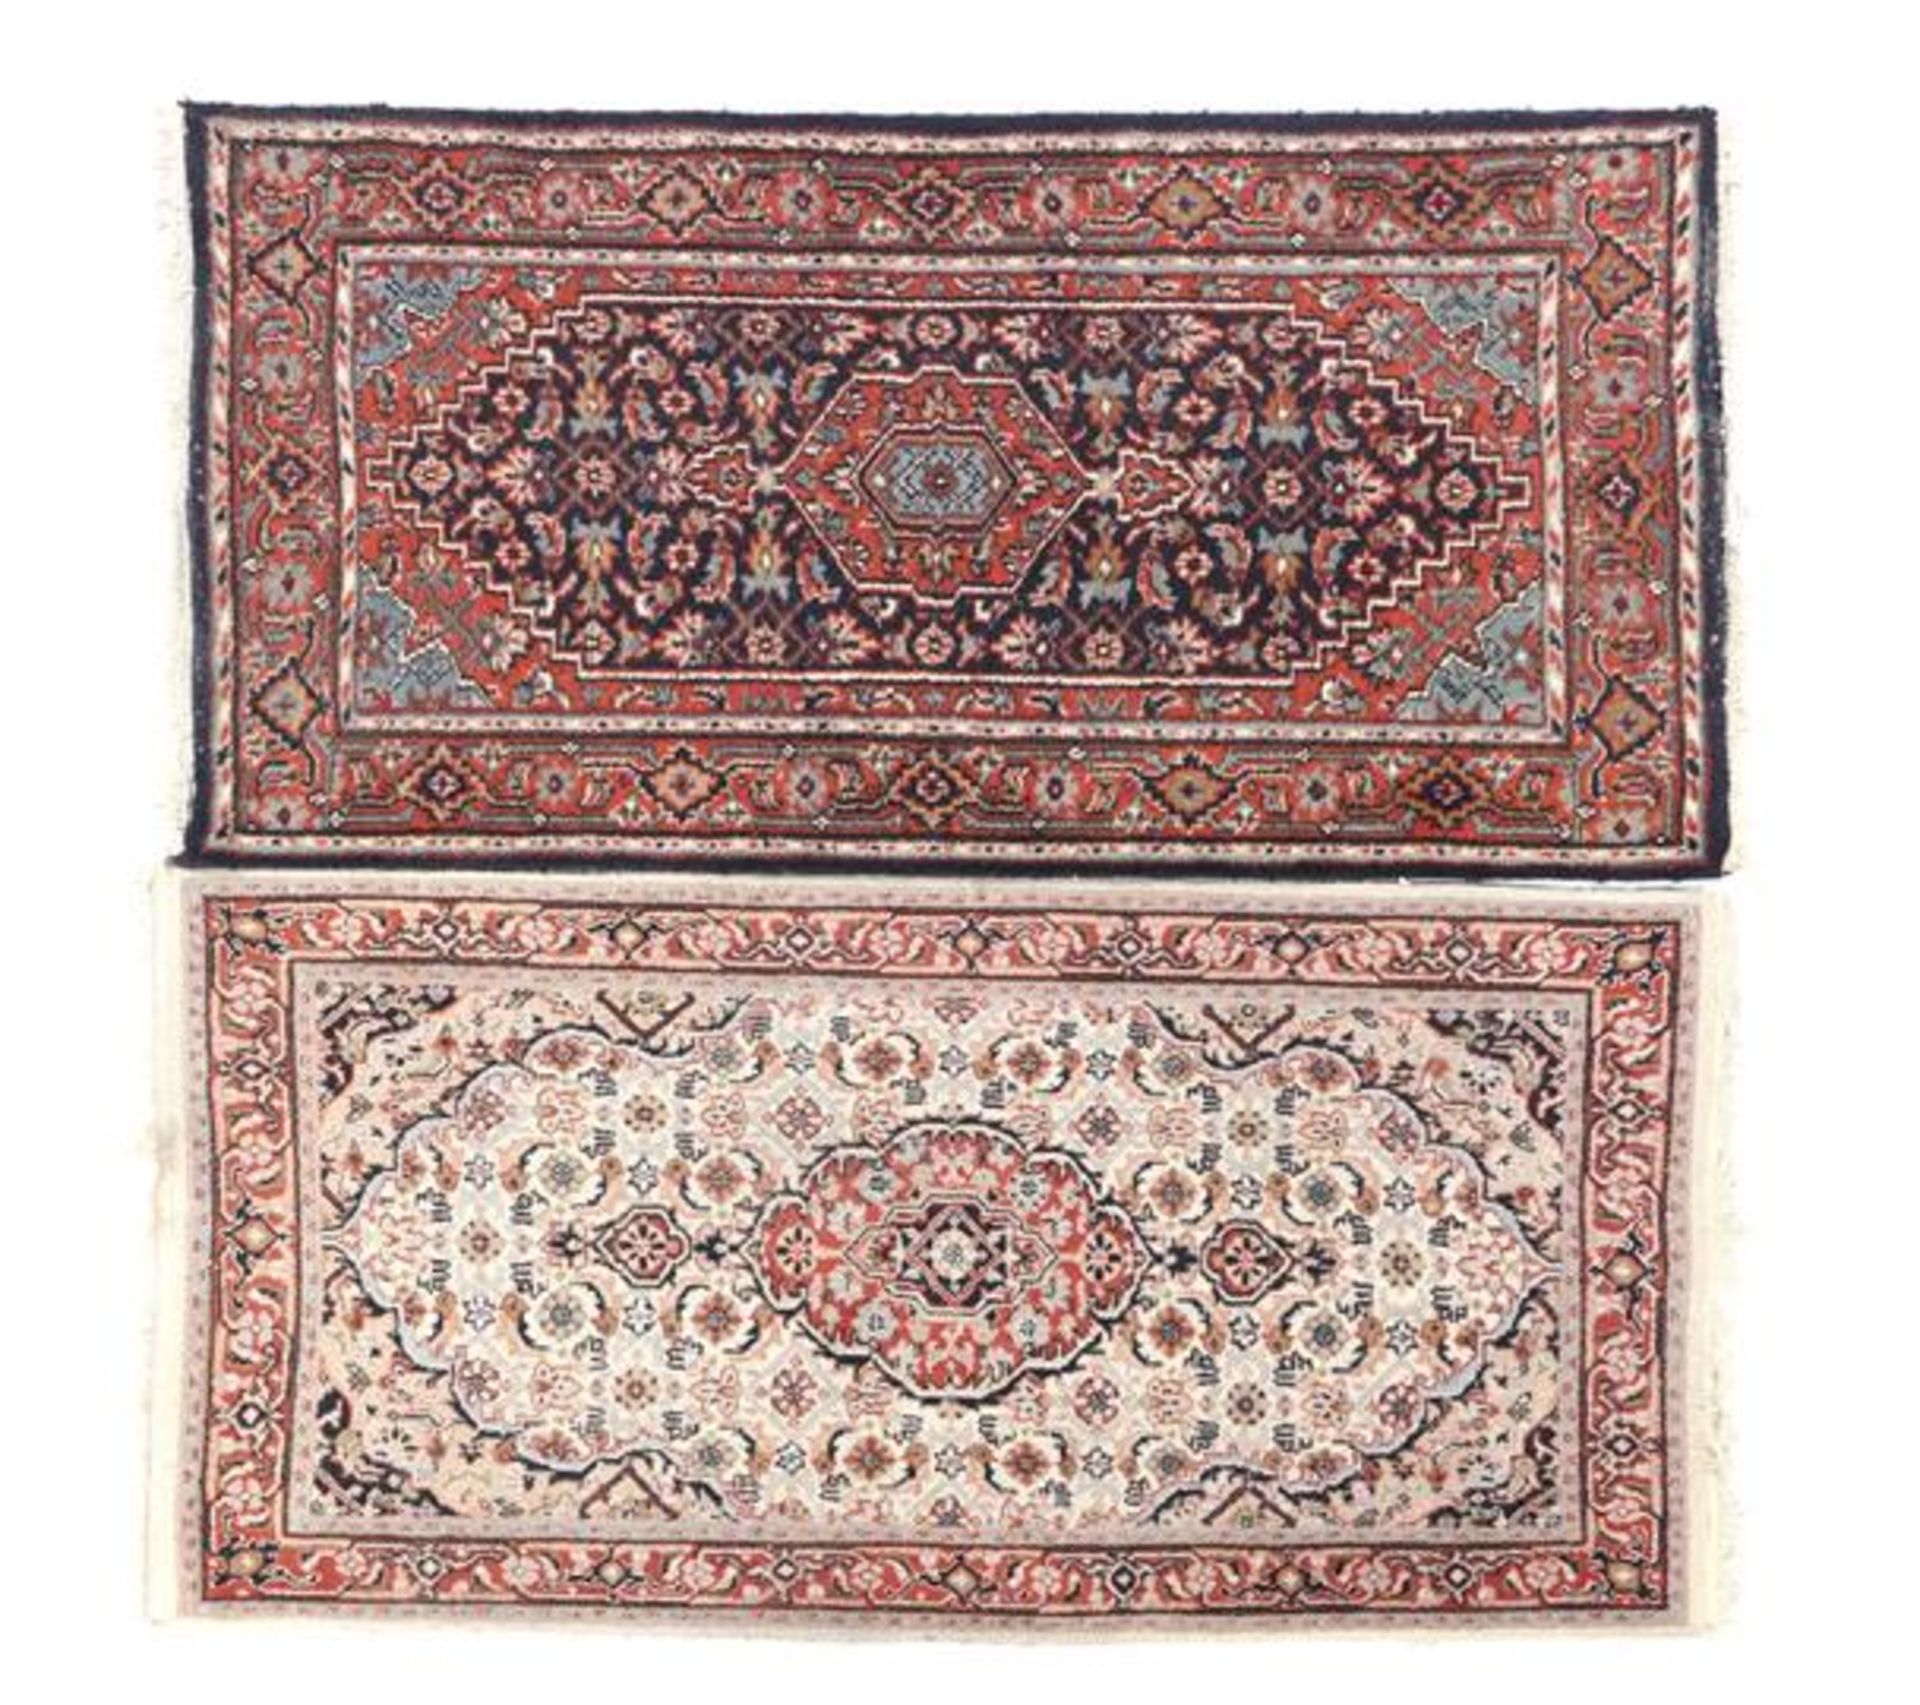 2 Oriental hand-knotted Bidjars 162x92 cm and 163x93 cm